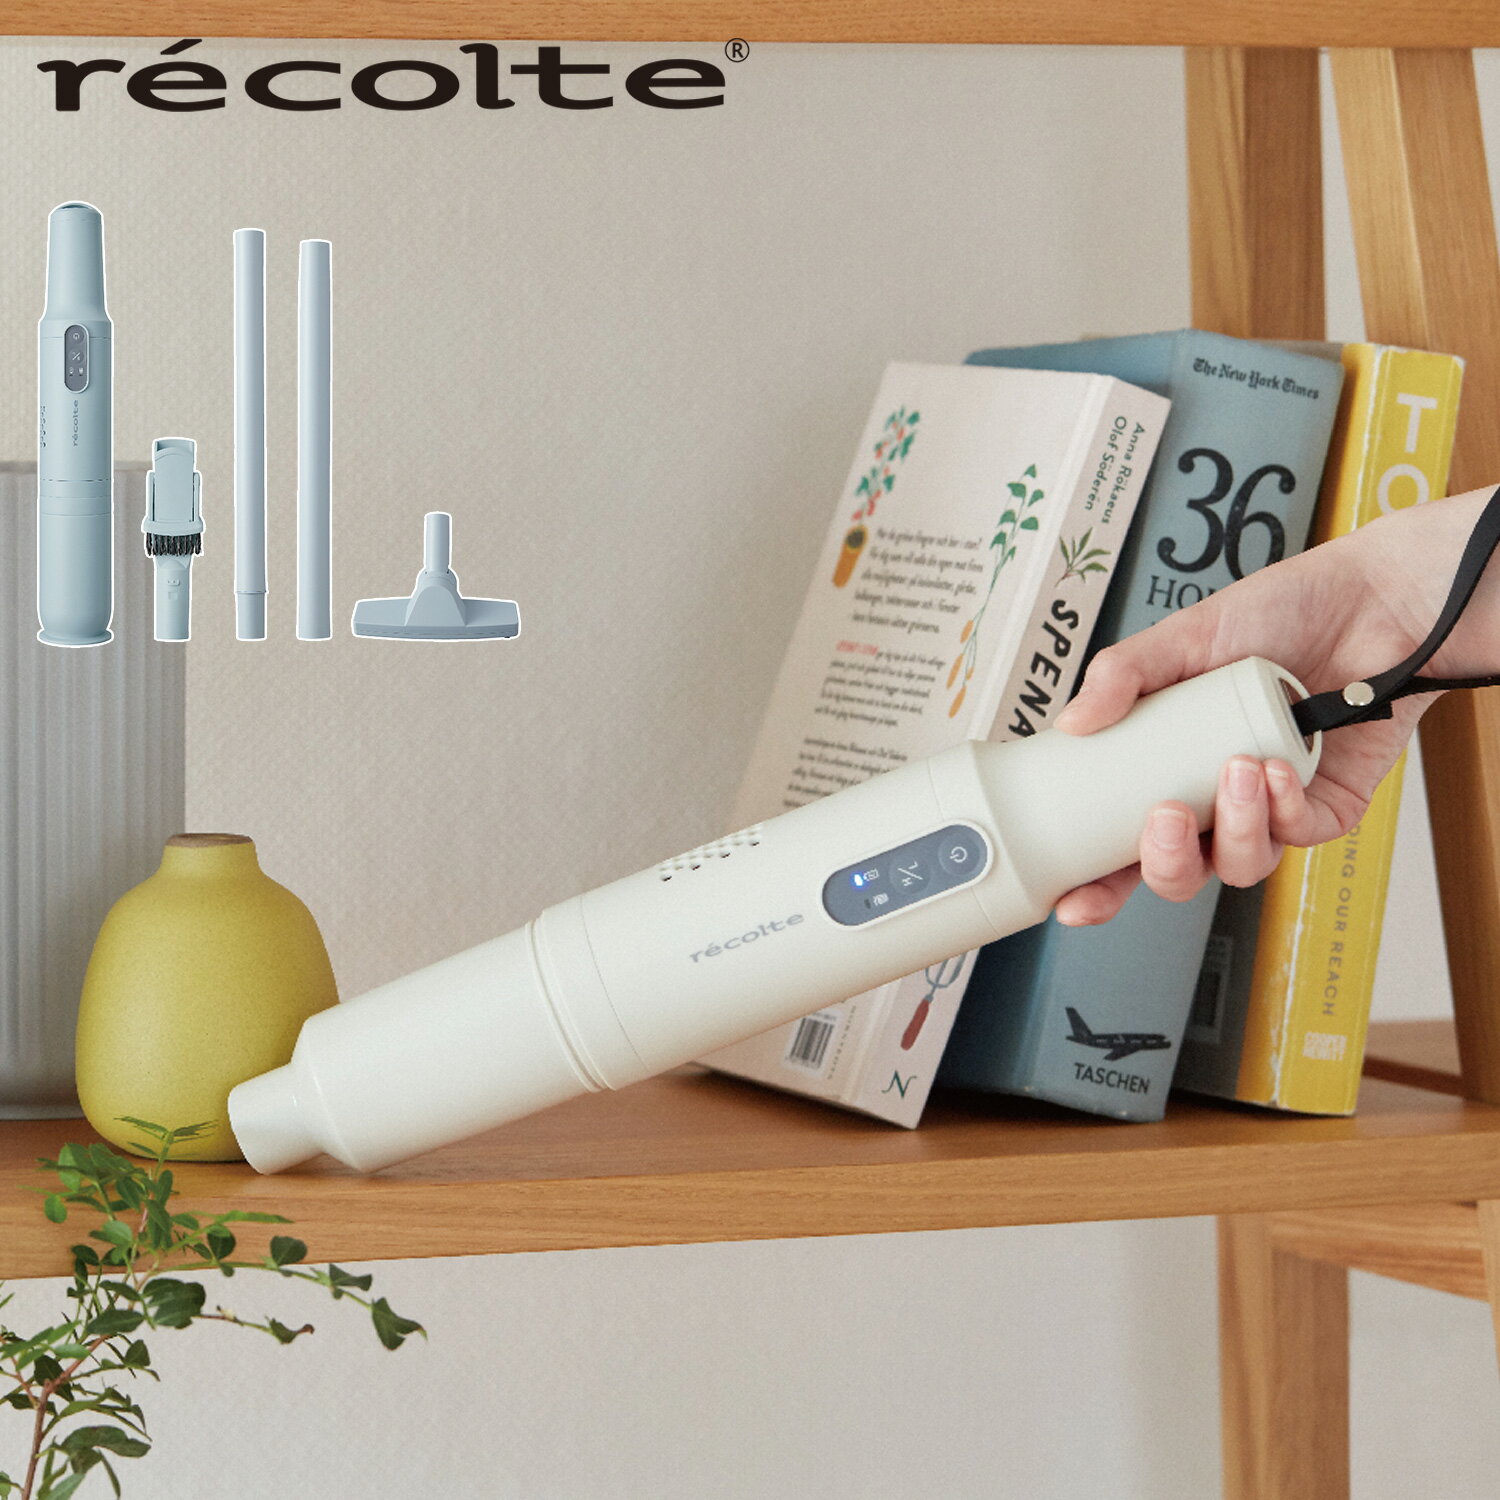 【クーポン対象外】 レコルト recolte 掃除機 コードレス ハンディ スティック型 スティッククリーナー Cordless Stick Cleaner ホワイト ブルー 白 RSC-1FS